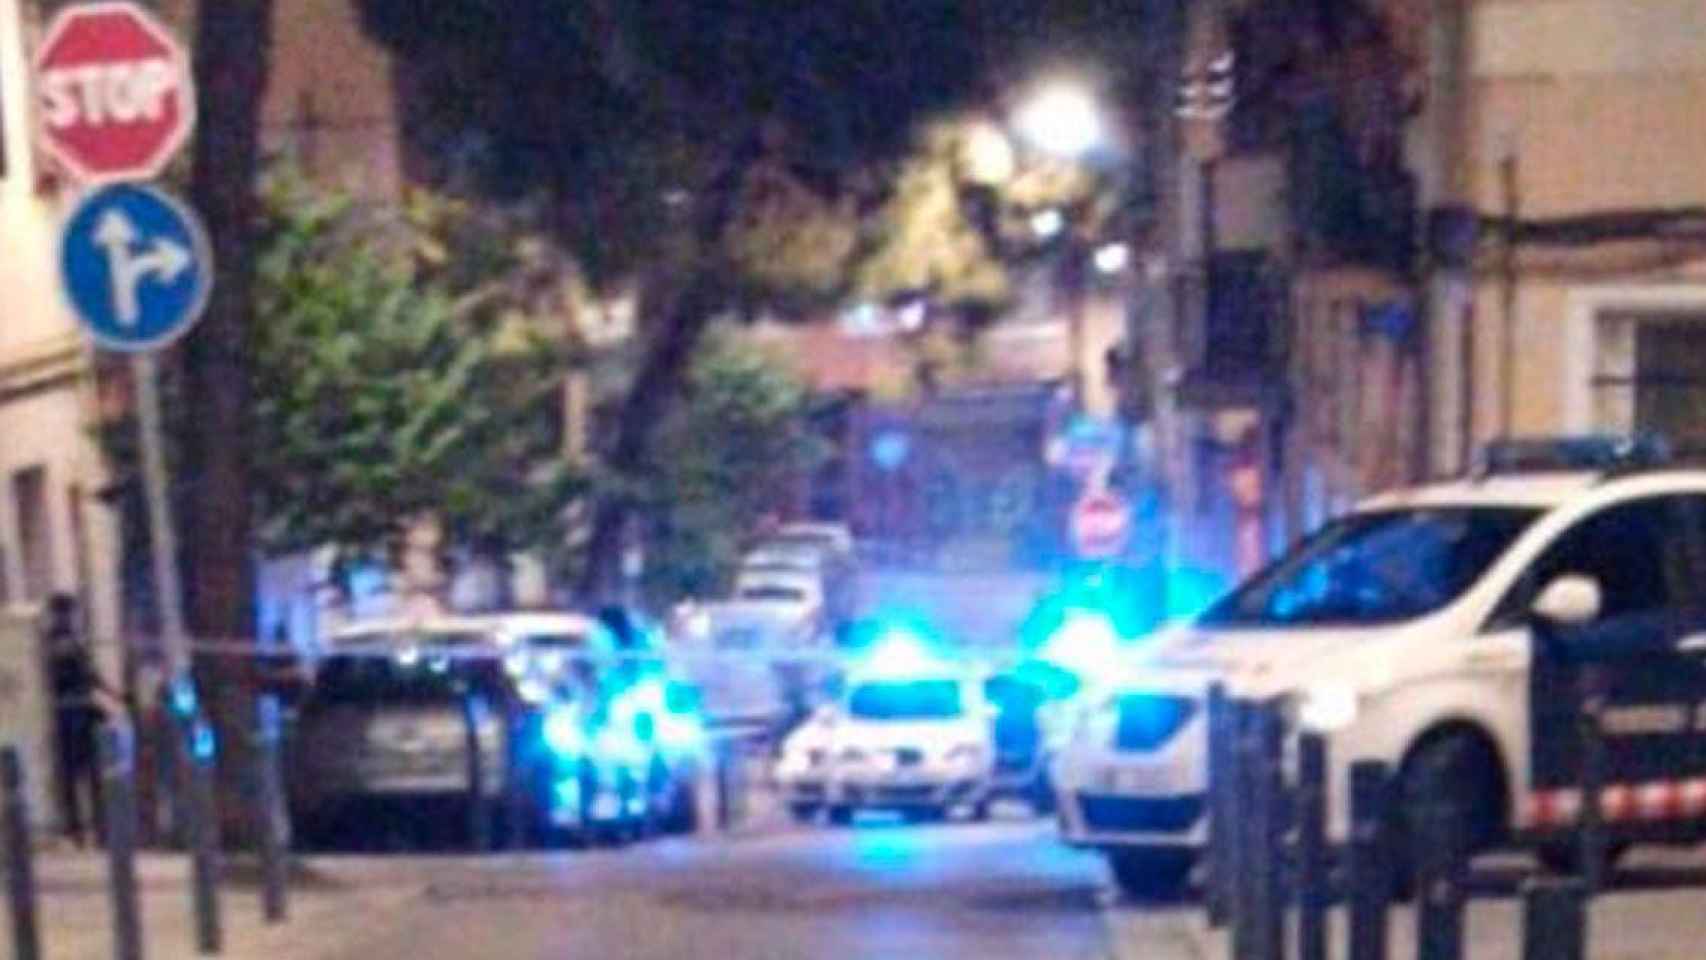 Patrullas de Mossos d'Esquadra en L'Hospitalet tras los disparos en el barrio de Collblanc / HELPERS